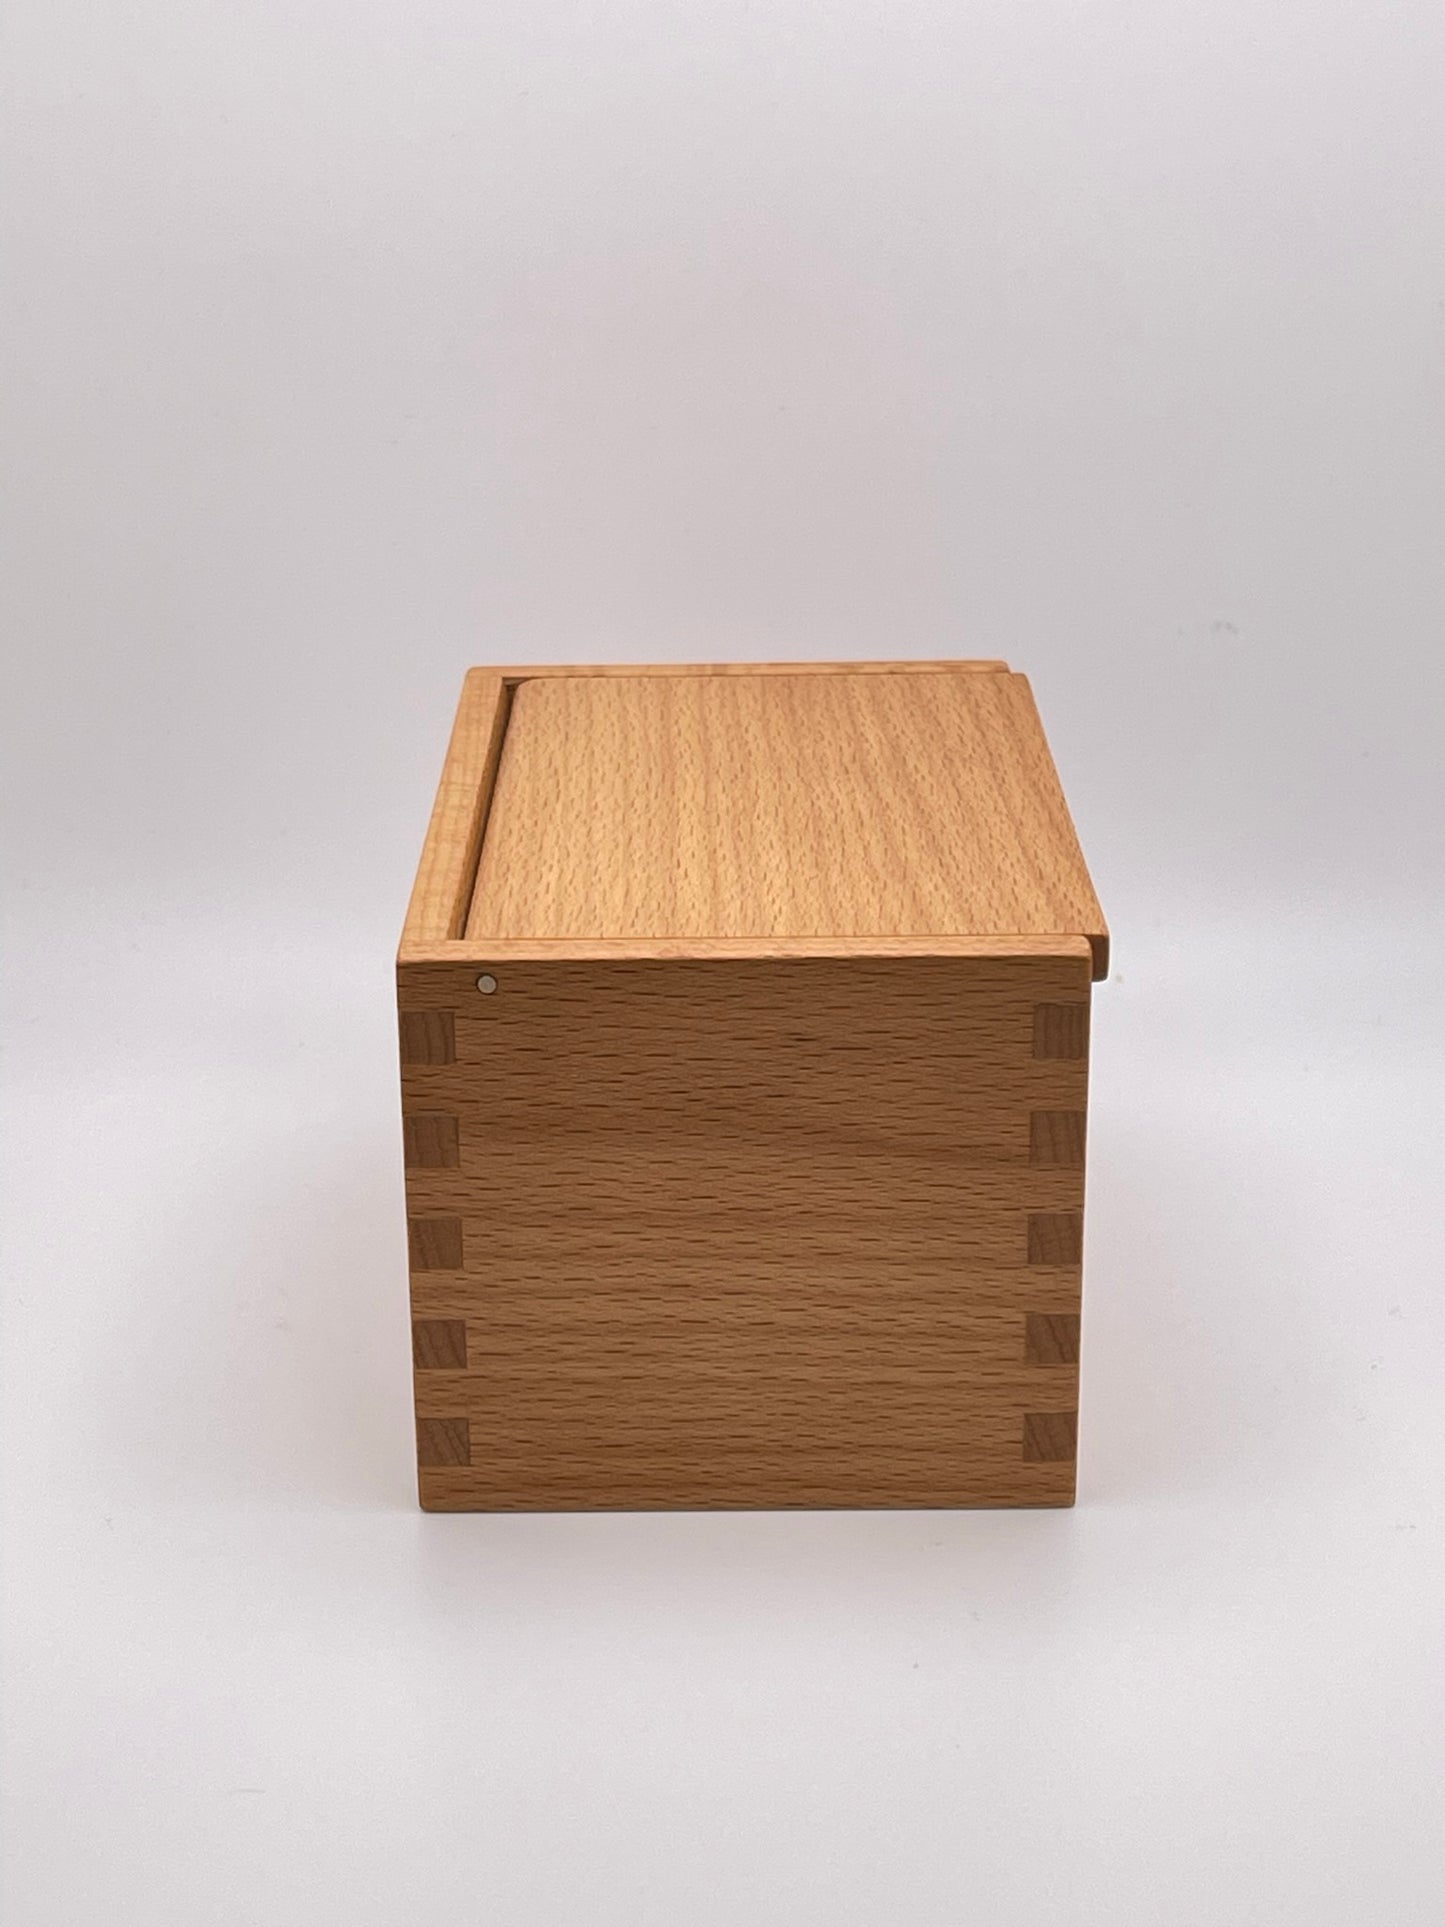 Wood Salt Cellar - Salt Box - Salt Pig - Keepsake Box - Beech Hardwood